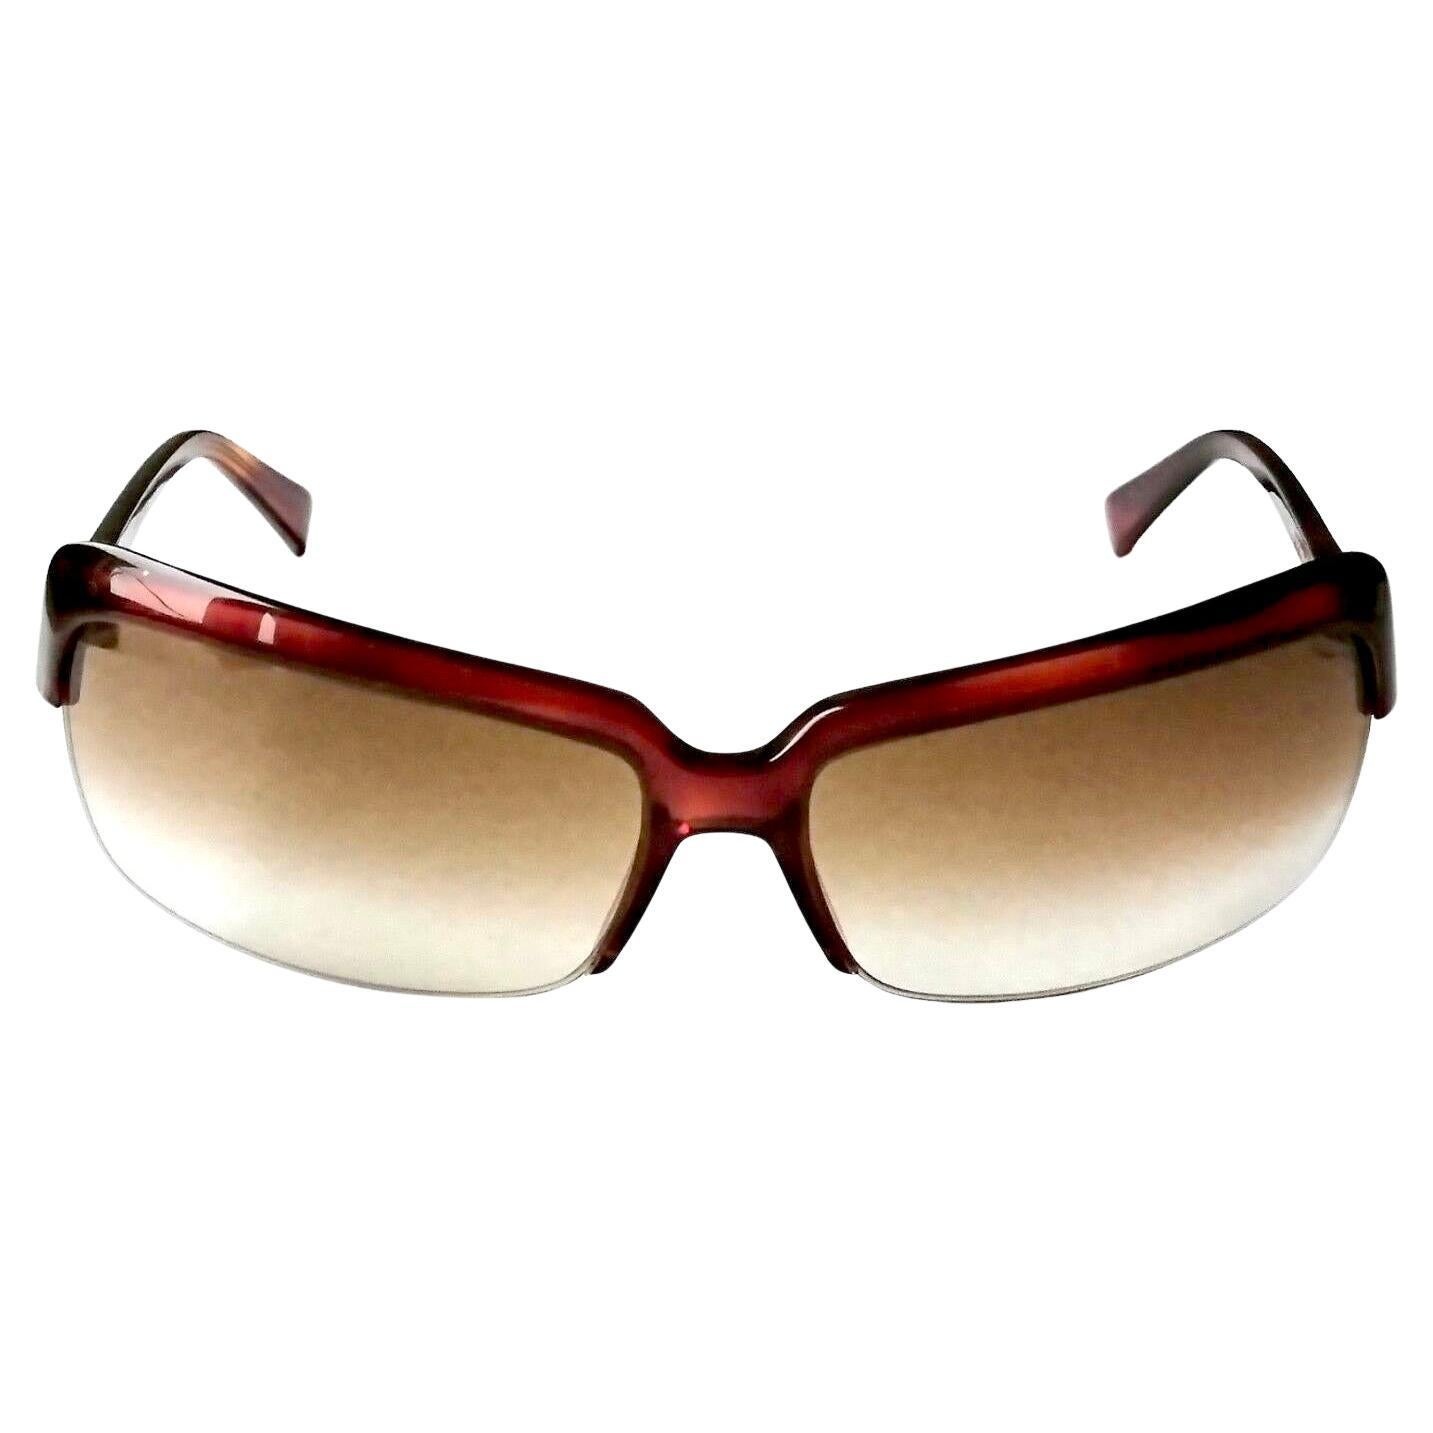 La Perla New sunglasses art. 063M col. 0710  For Sale